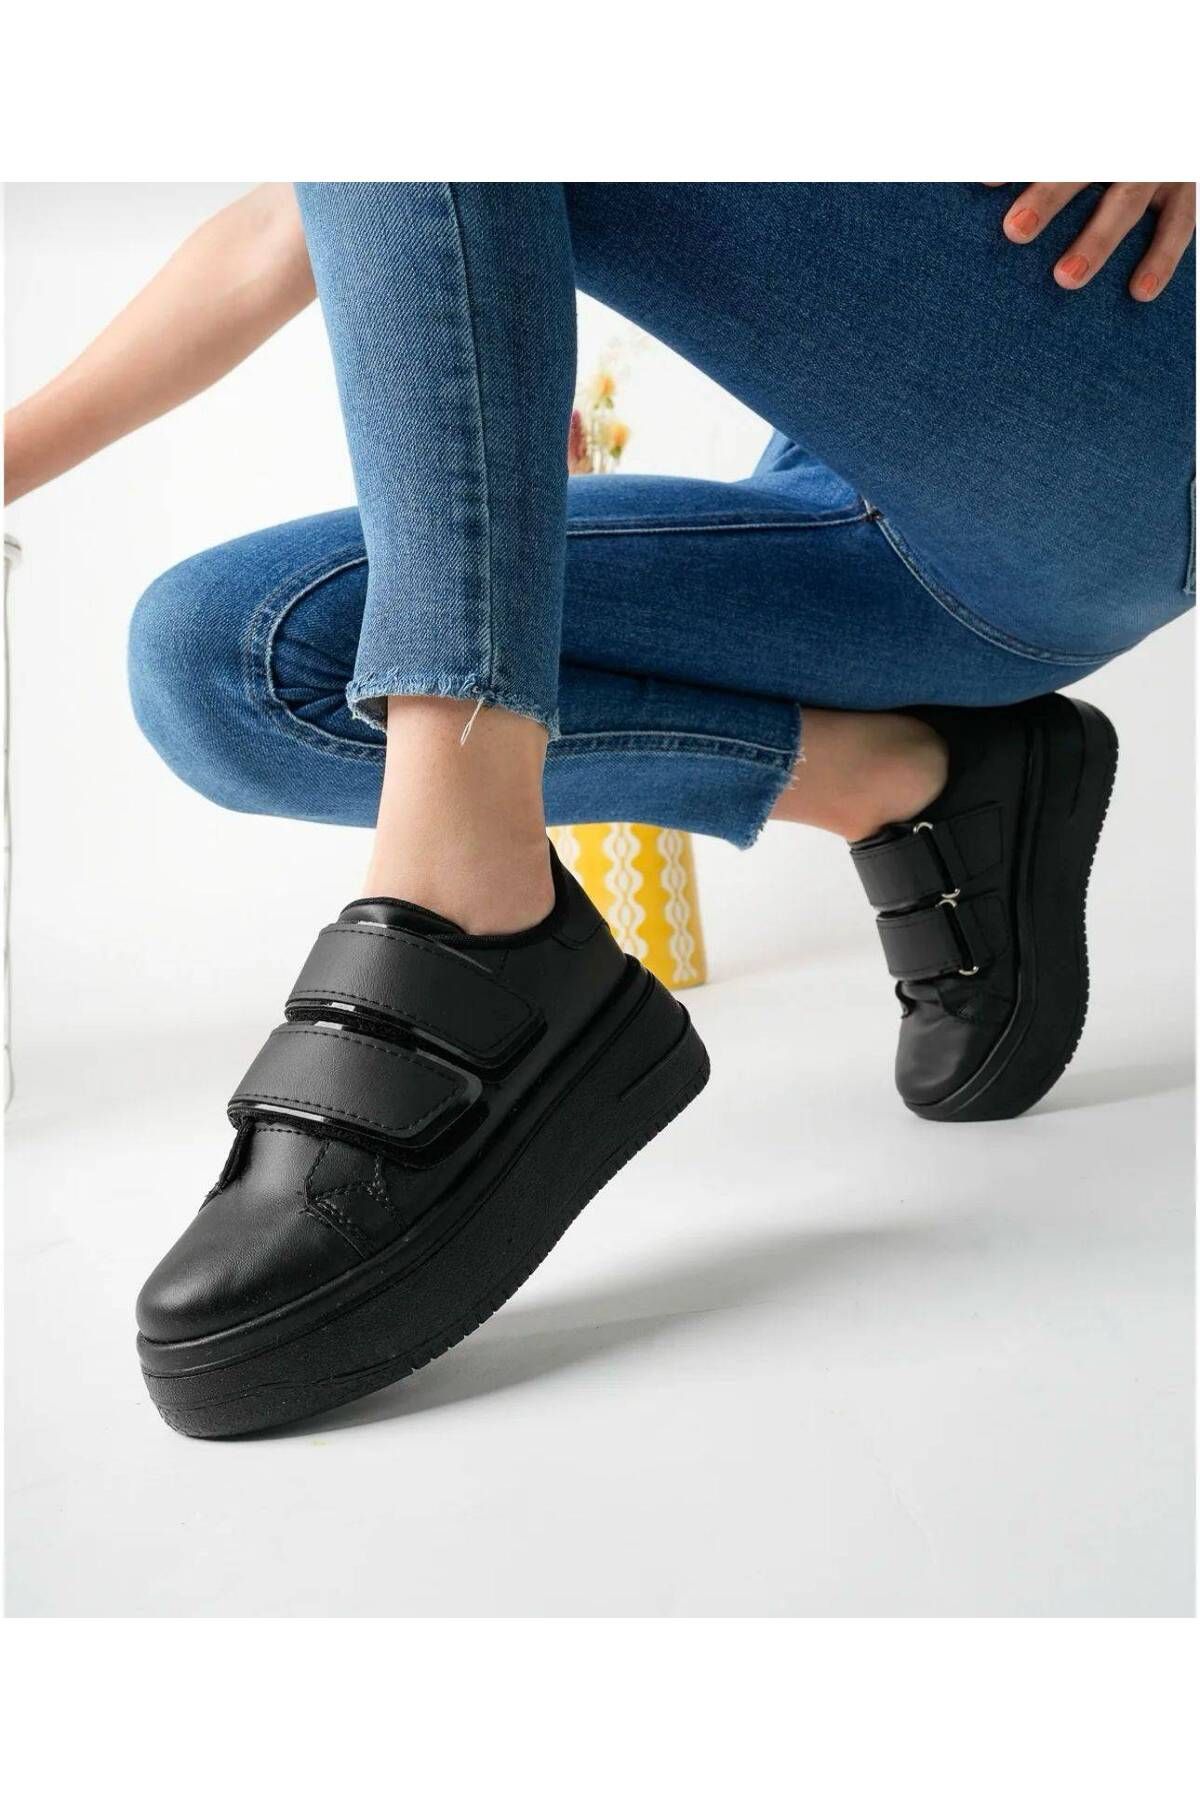 ayakkabıhavuzu Siyah Yüksek Tabanlı Cırt Bantlı Sneaker